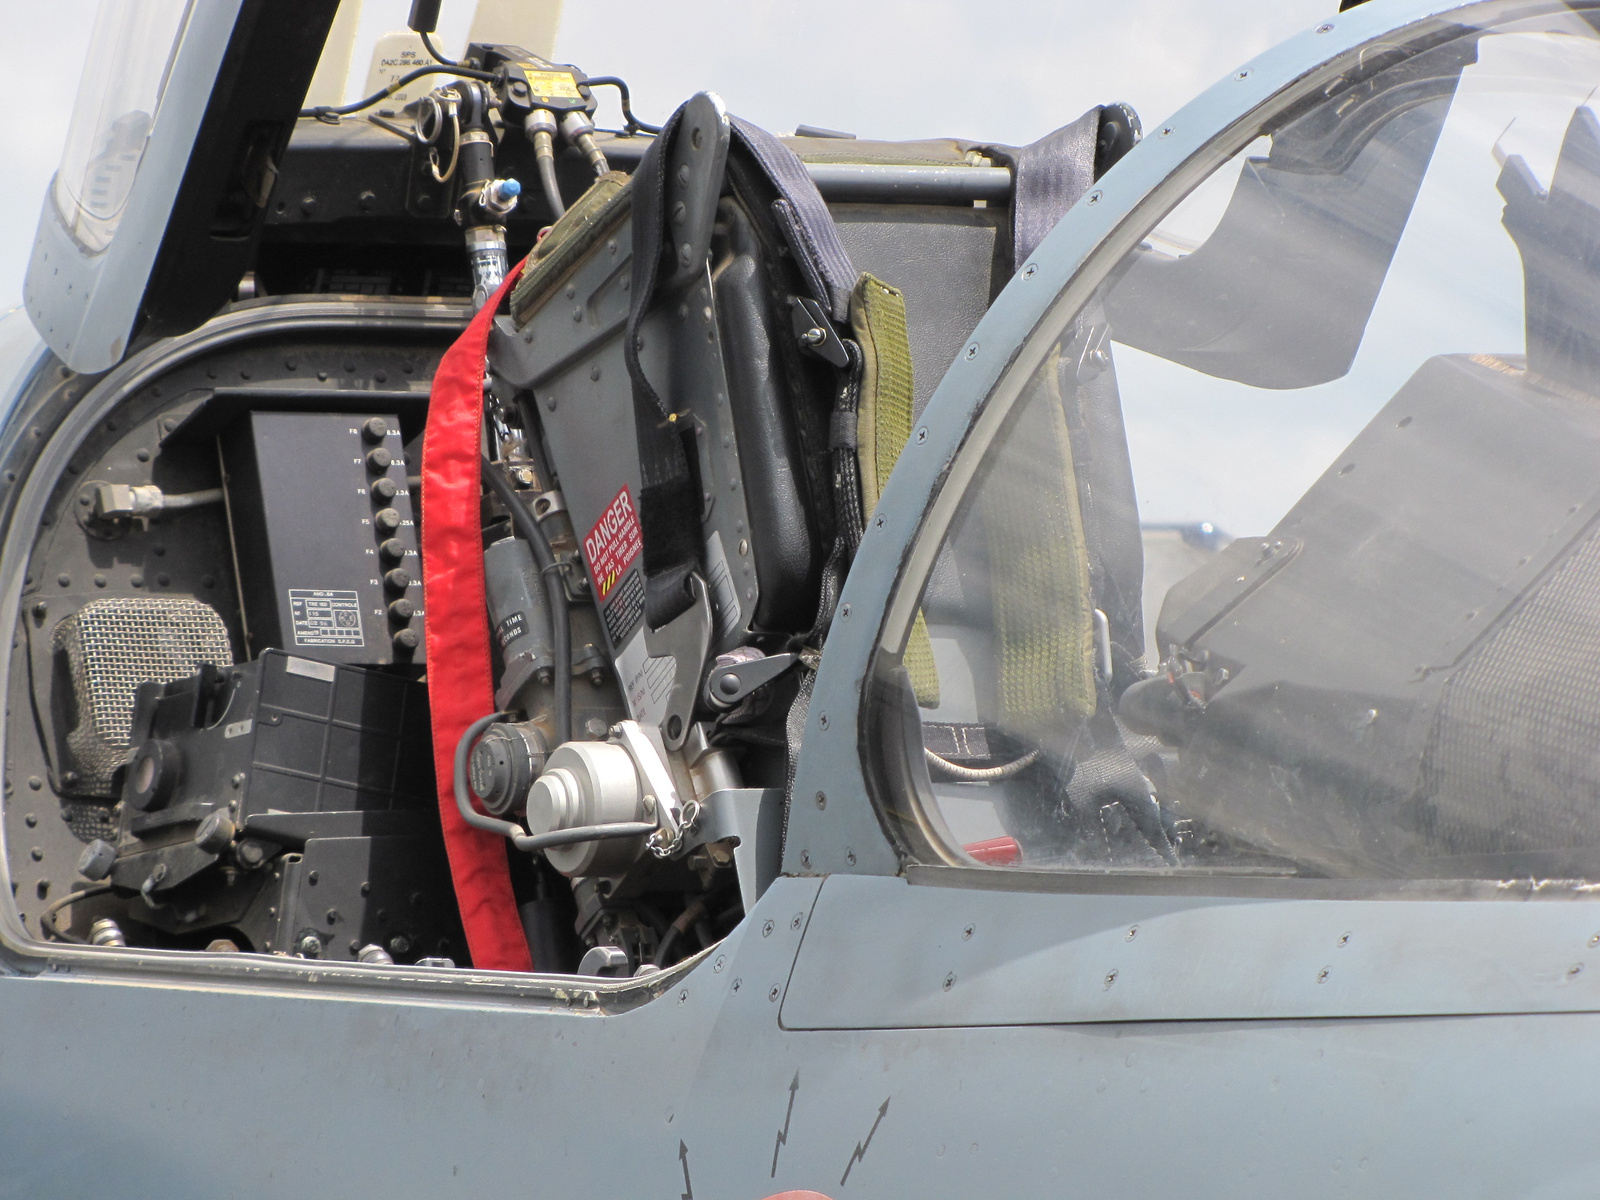 Zeltweg, Airpower 2013, Mirage 2000, SzG3